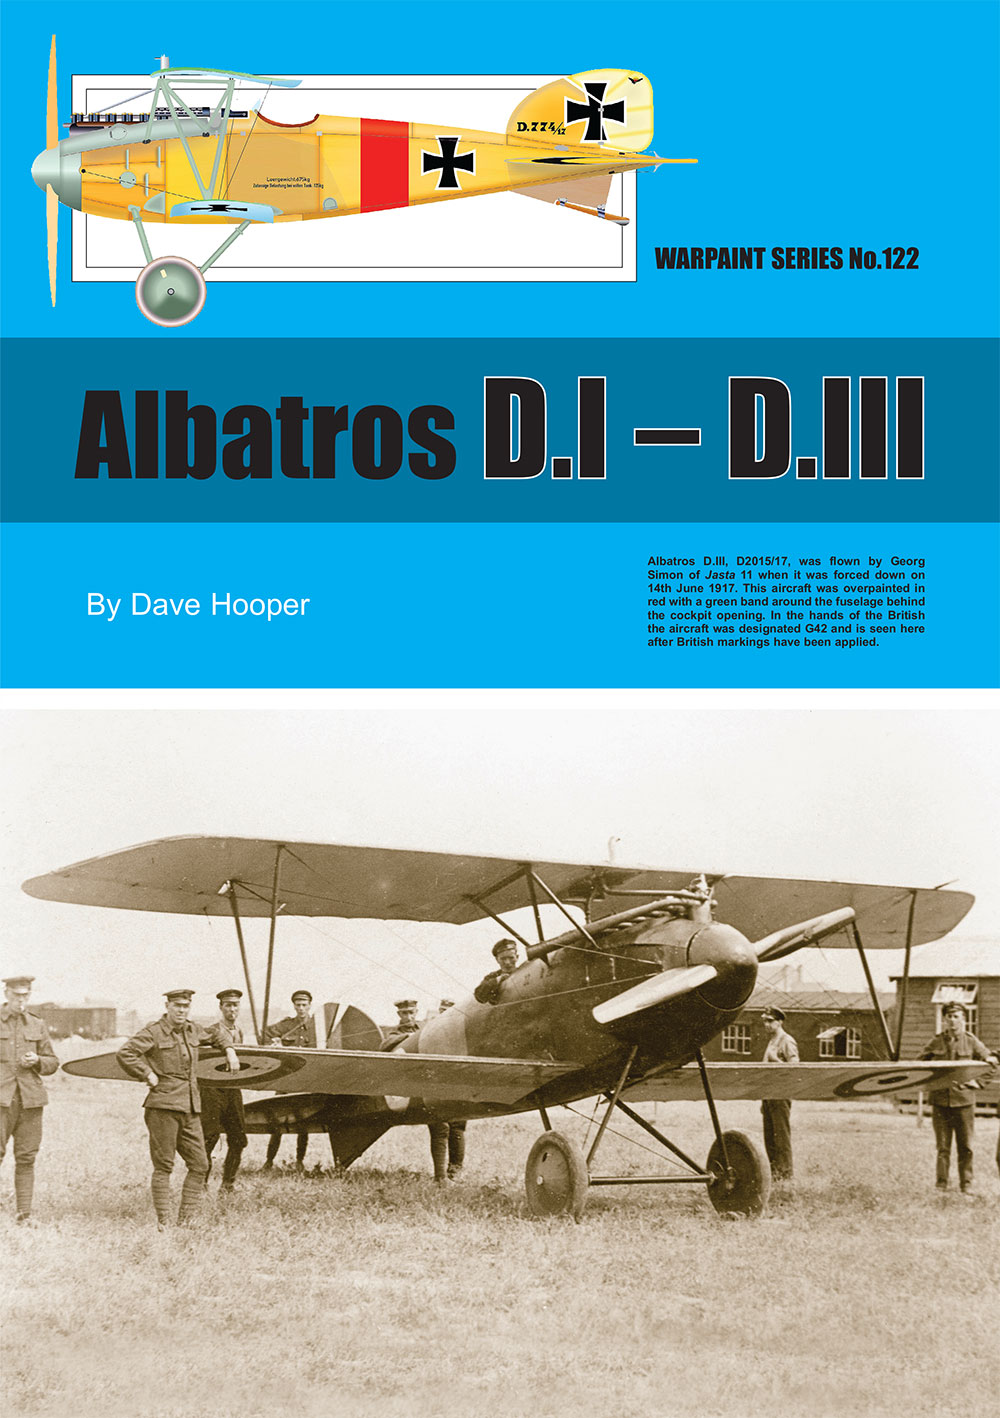 Guideline Publications 122 Albatros D.1 - D.111 Warpaint 122 